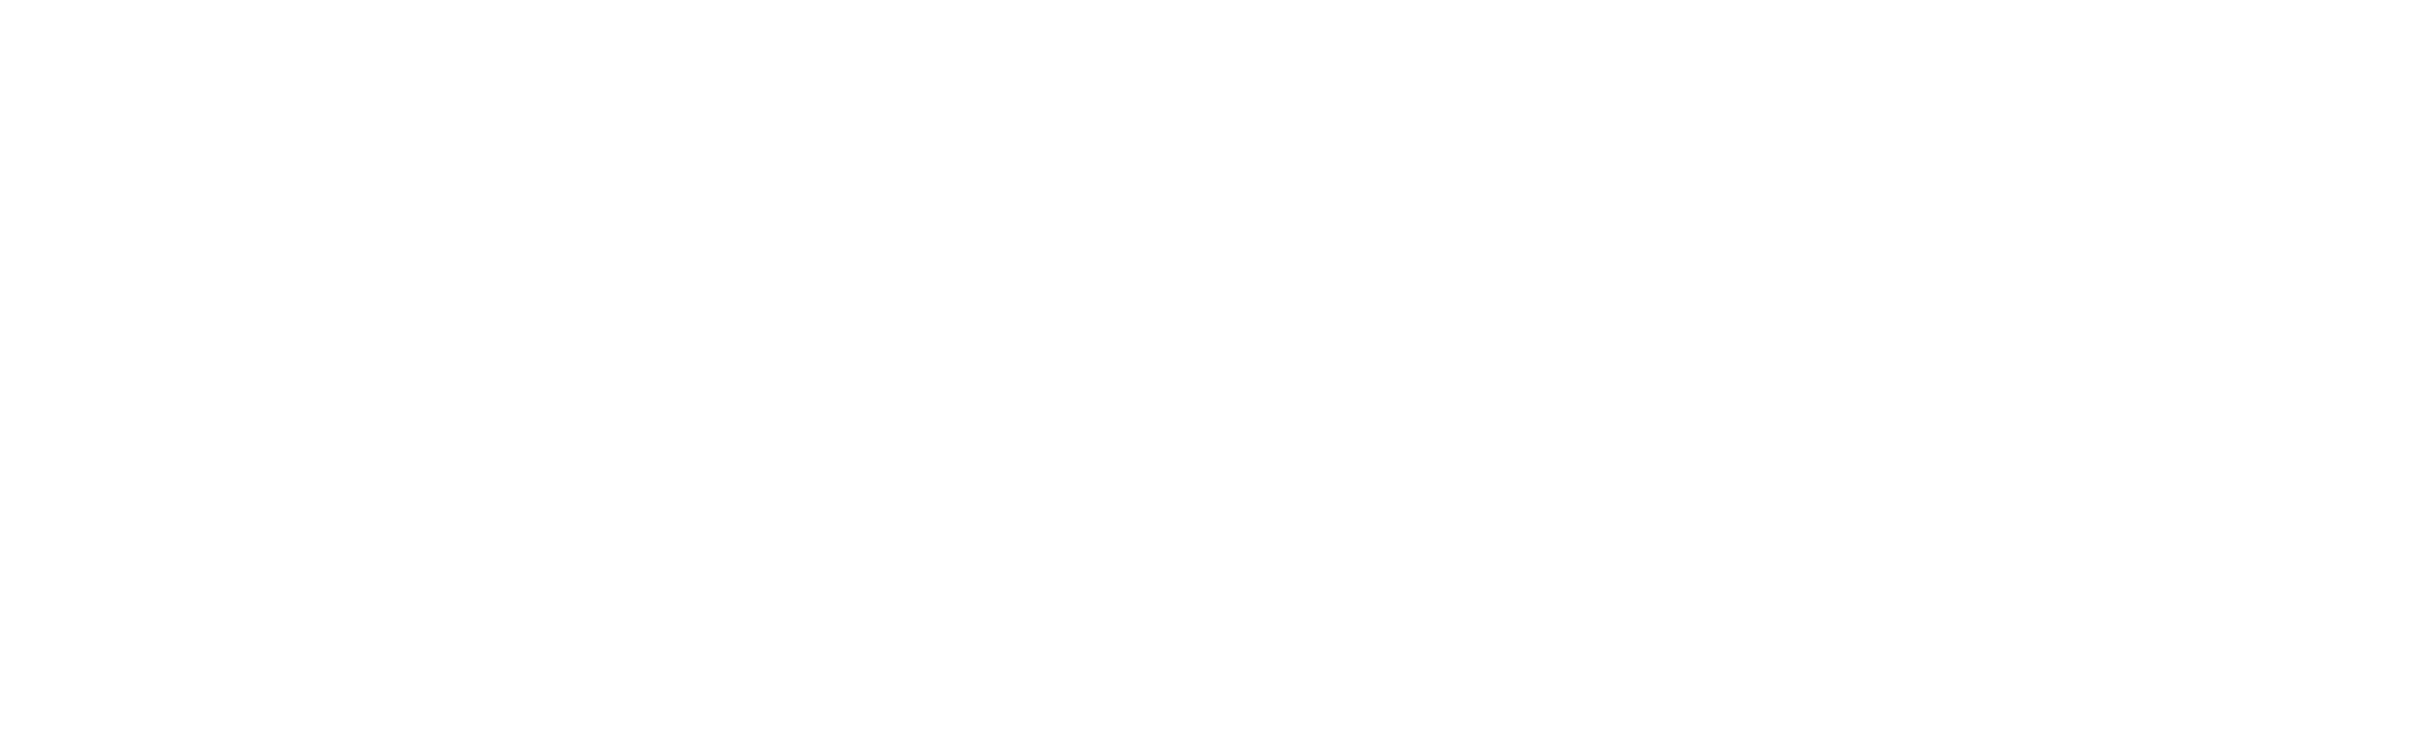 Lisboeta Macau Careers